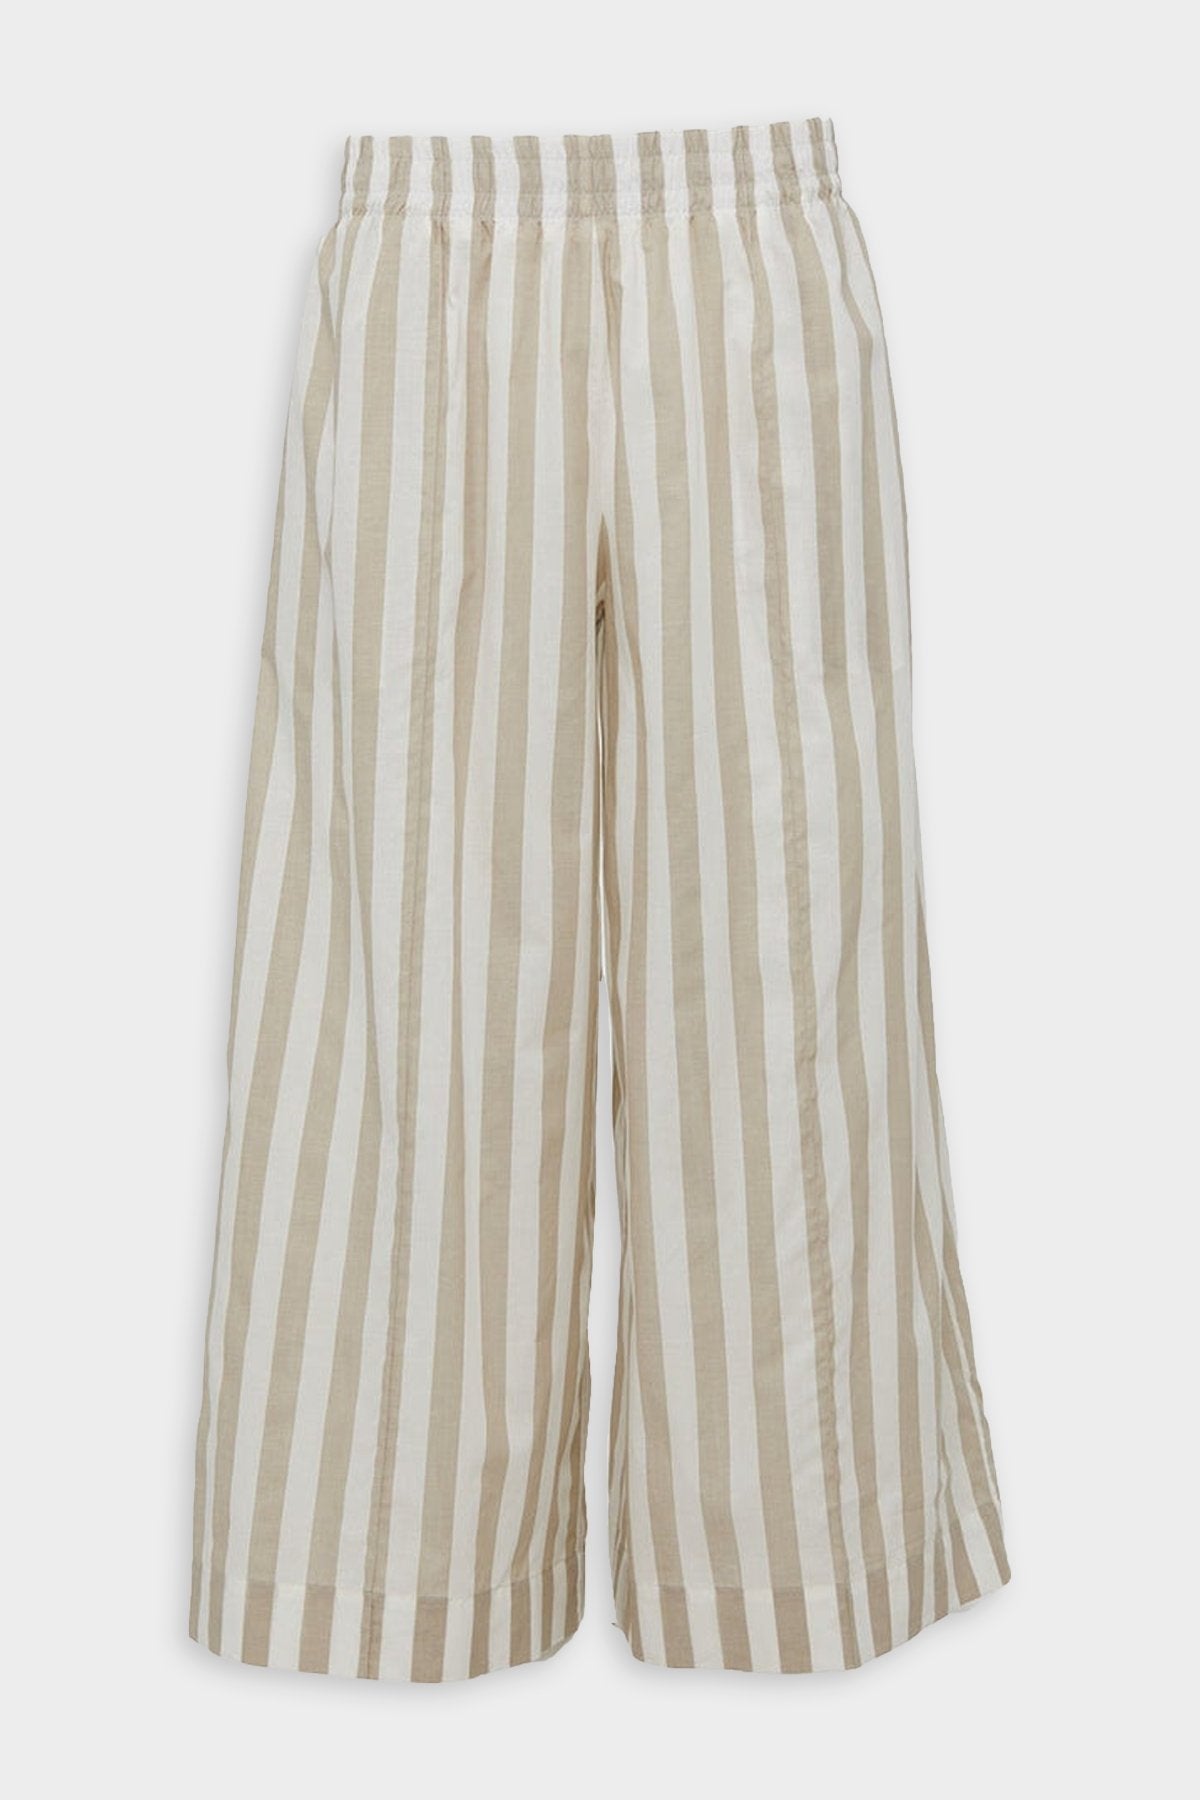 Mabel Pants in Light Brown Bold Striped - shop-olivia.com